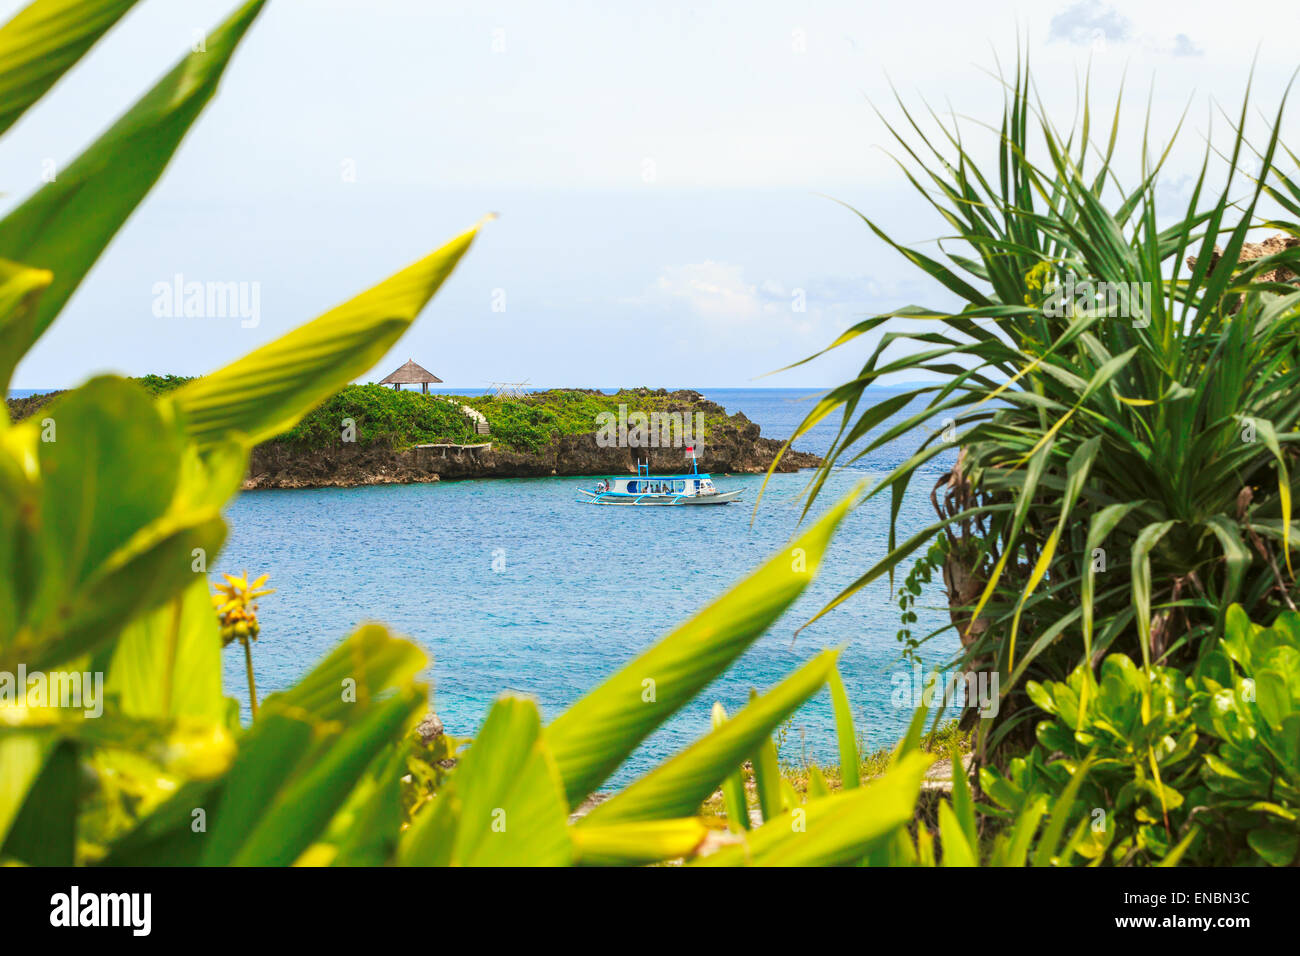 Grüne tropische Insel mit Palmen auf gelben Strand mit Steinen im blauen Meer, weißes Schiff Philippinen Boracay island Stockfoto